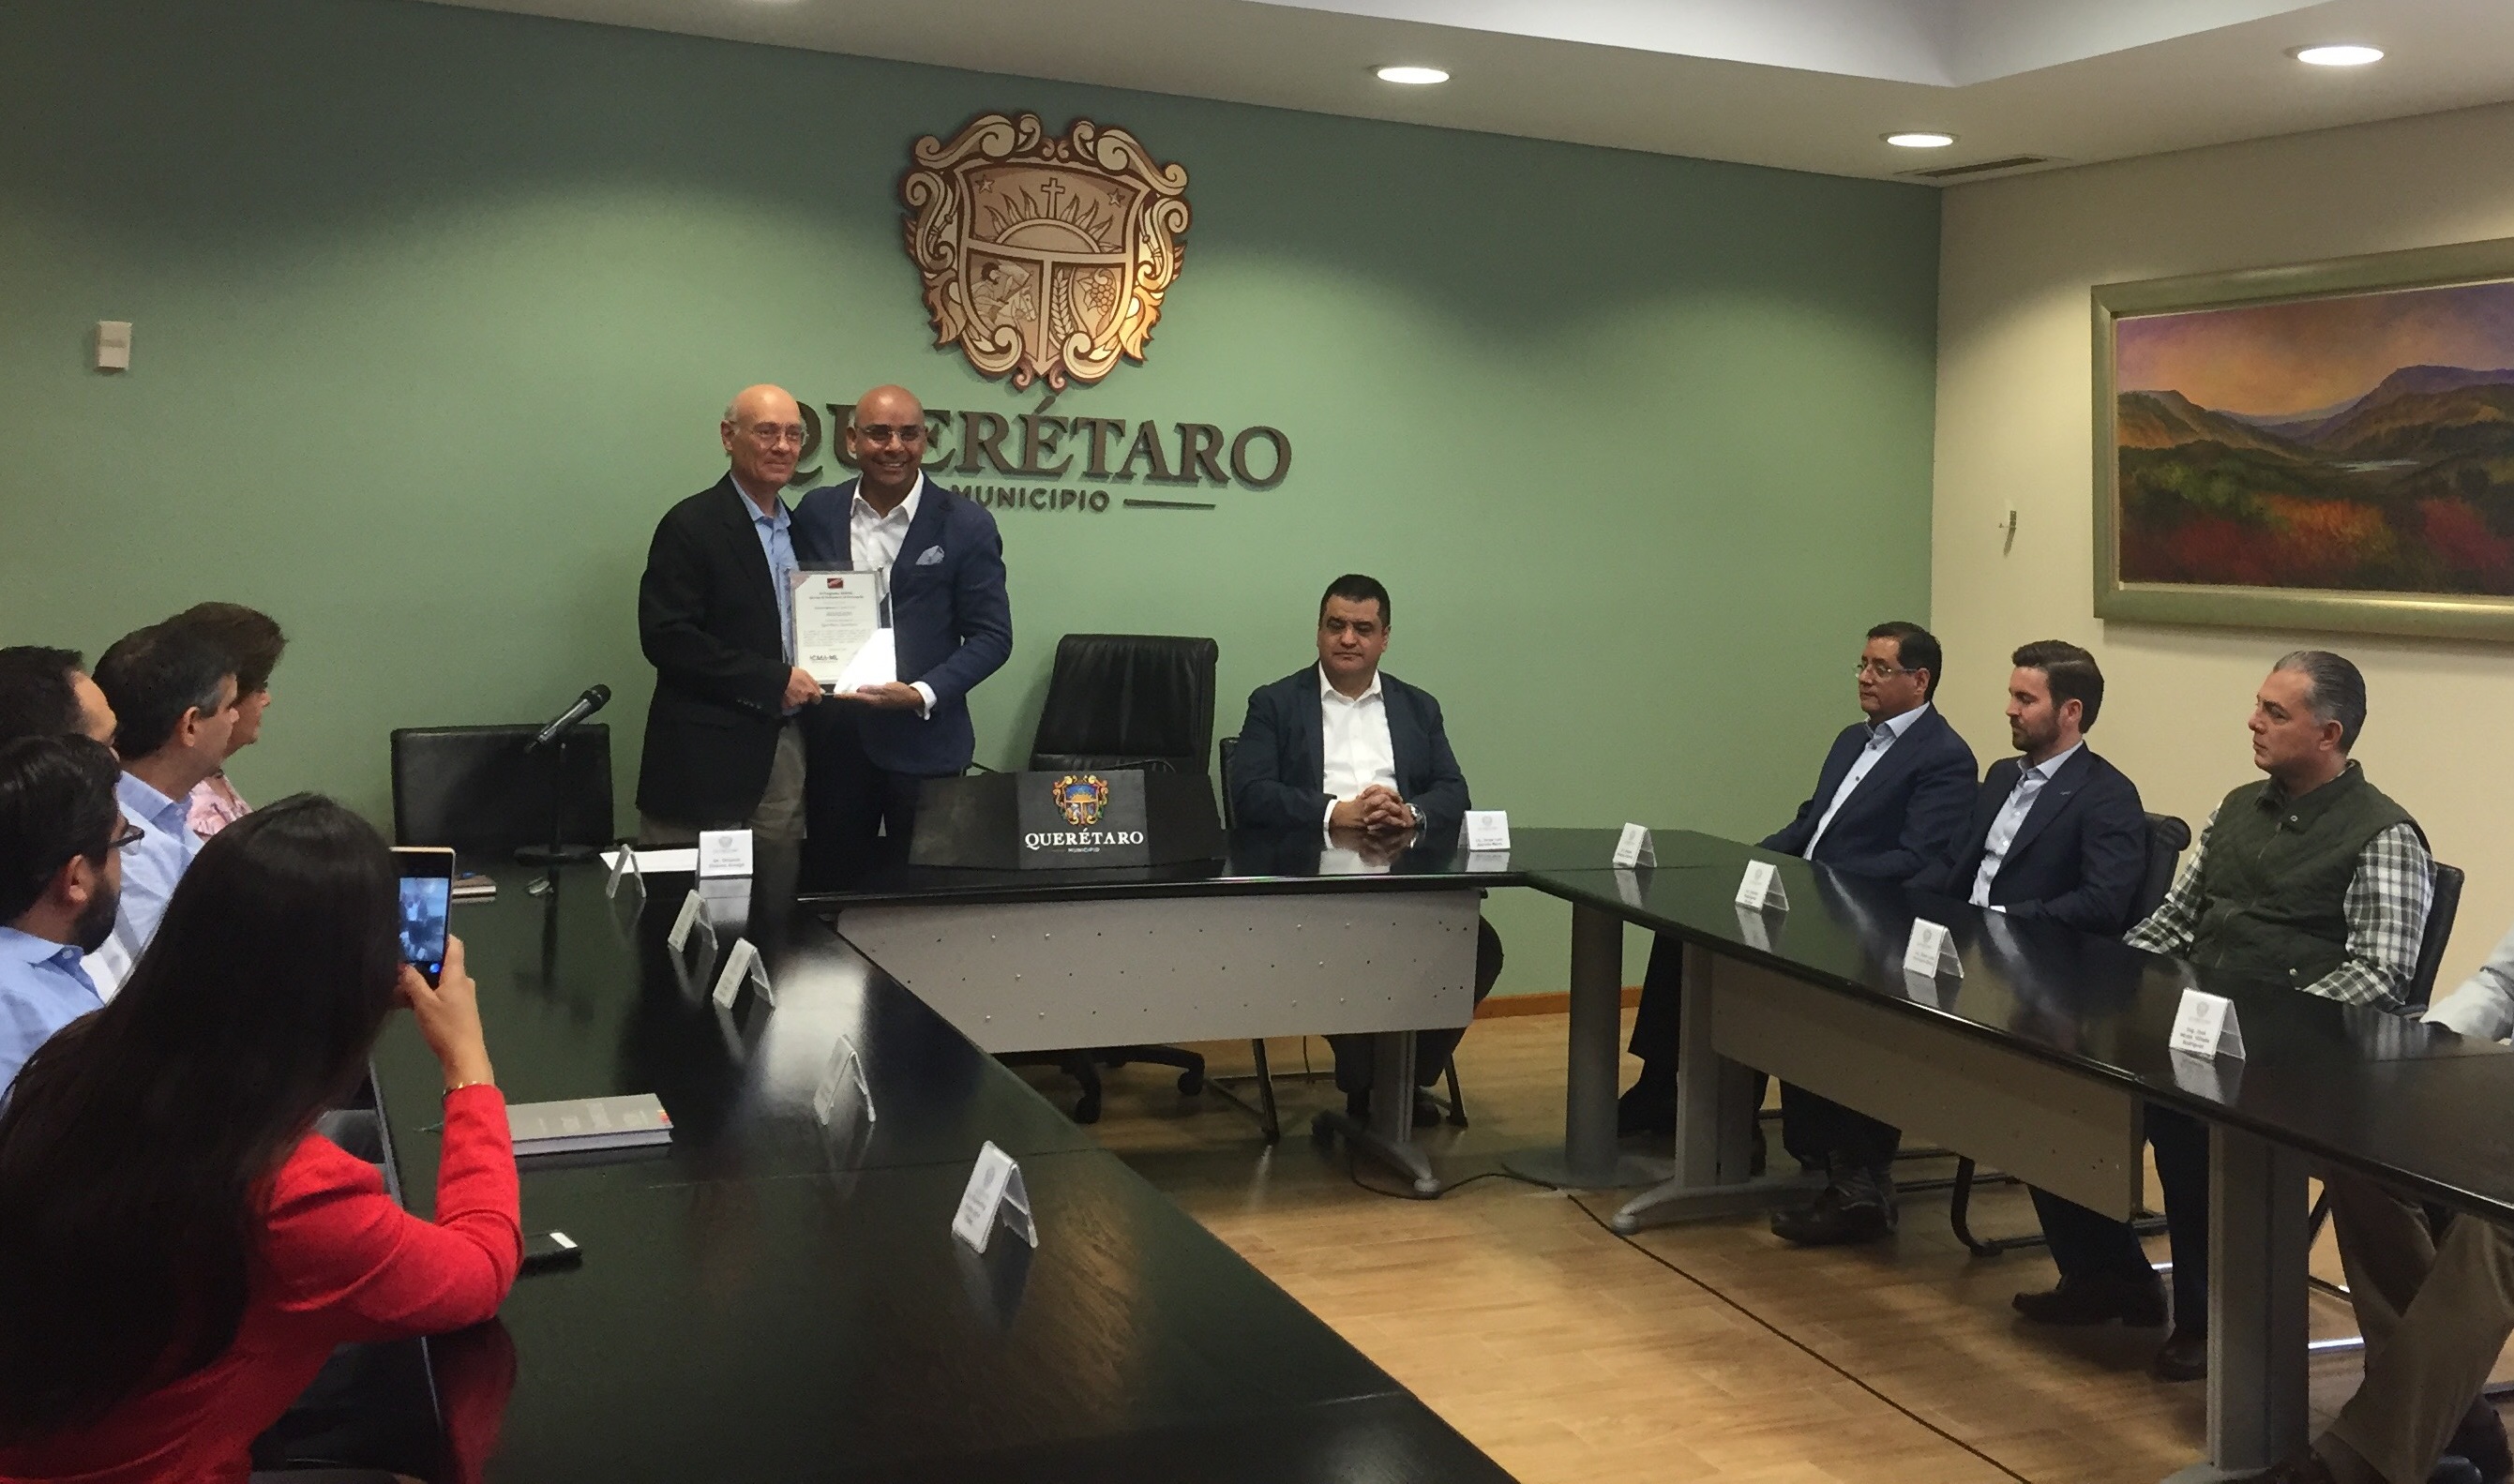  Otorgan segundo reconocimiento SINDES al municipio de Querétaro por su destacada gestión